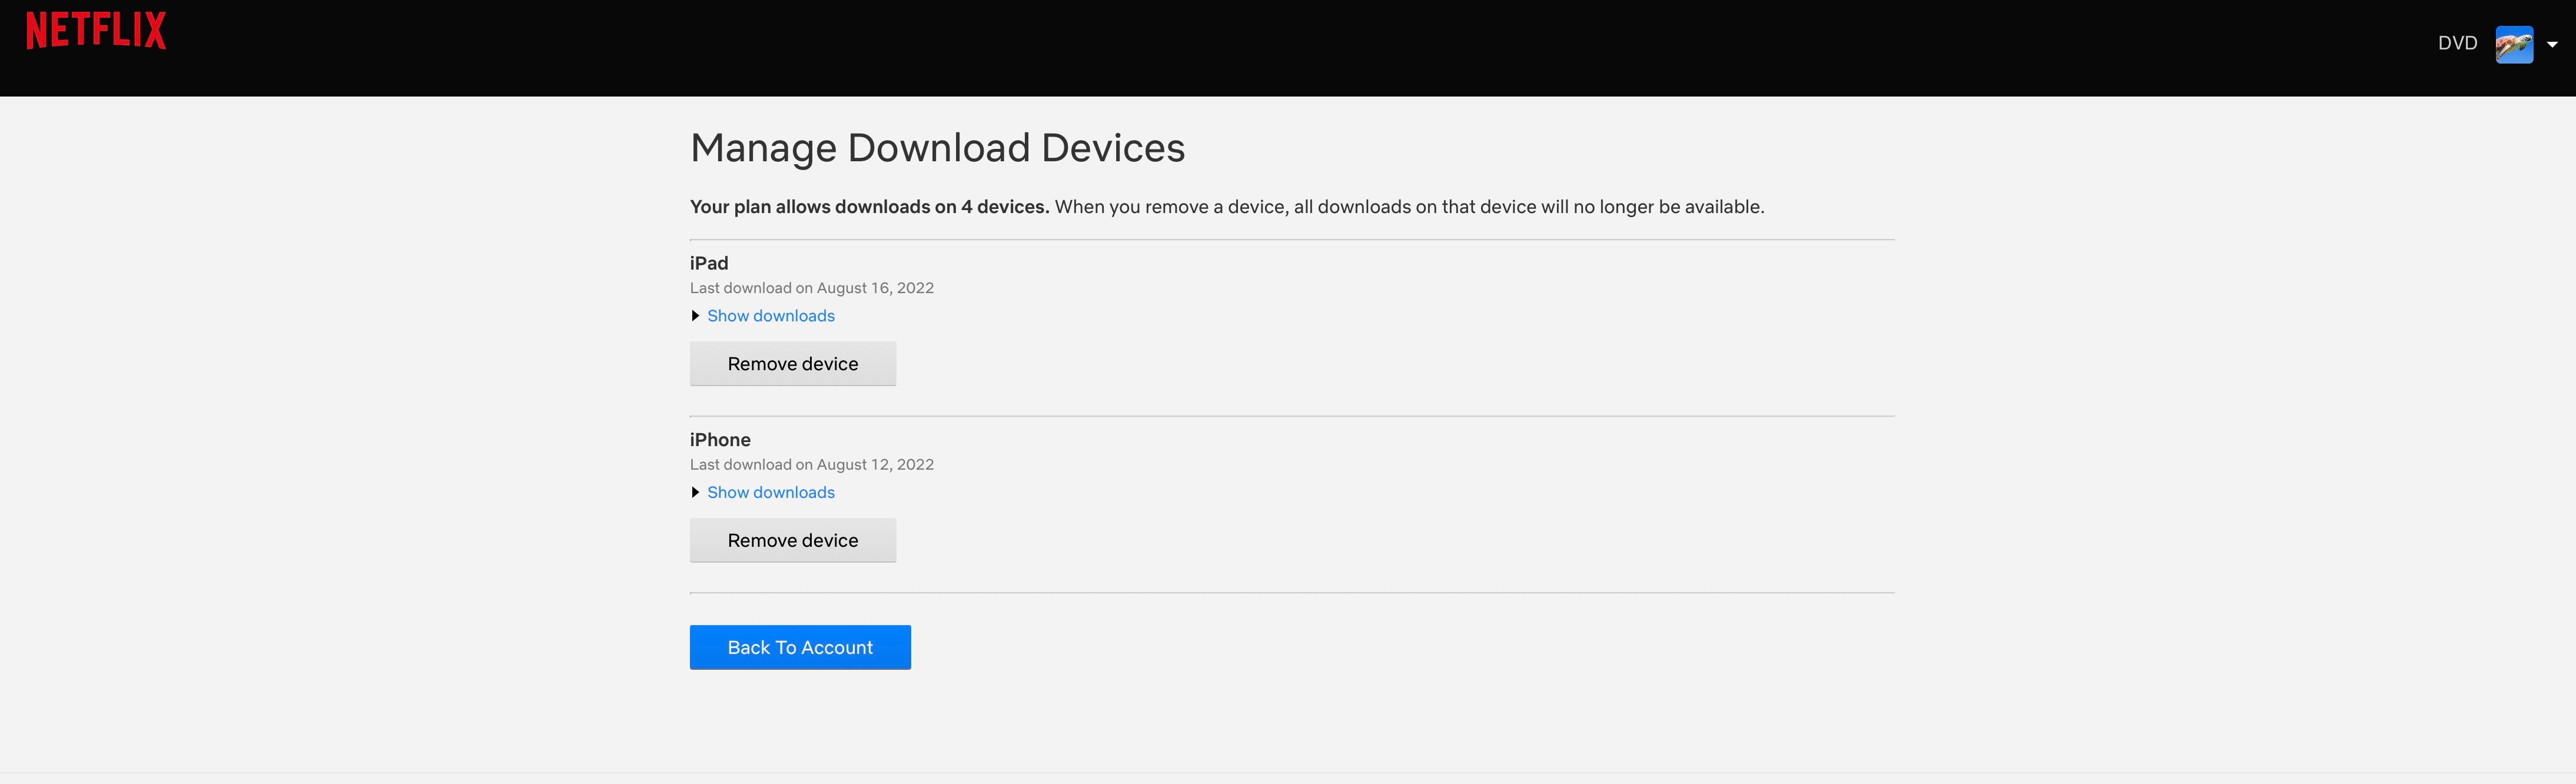 Netflix Gerencie a página da Web de dispositivos de download com o botão Remover dispositivo 